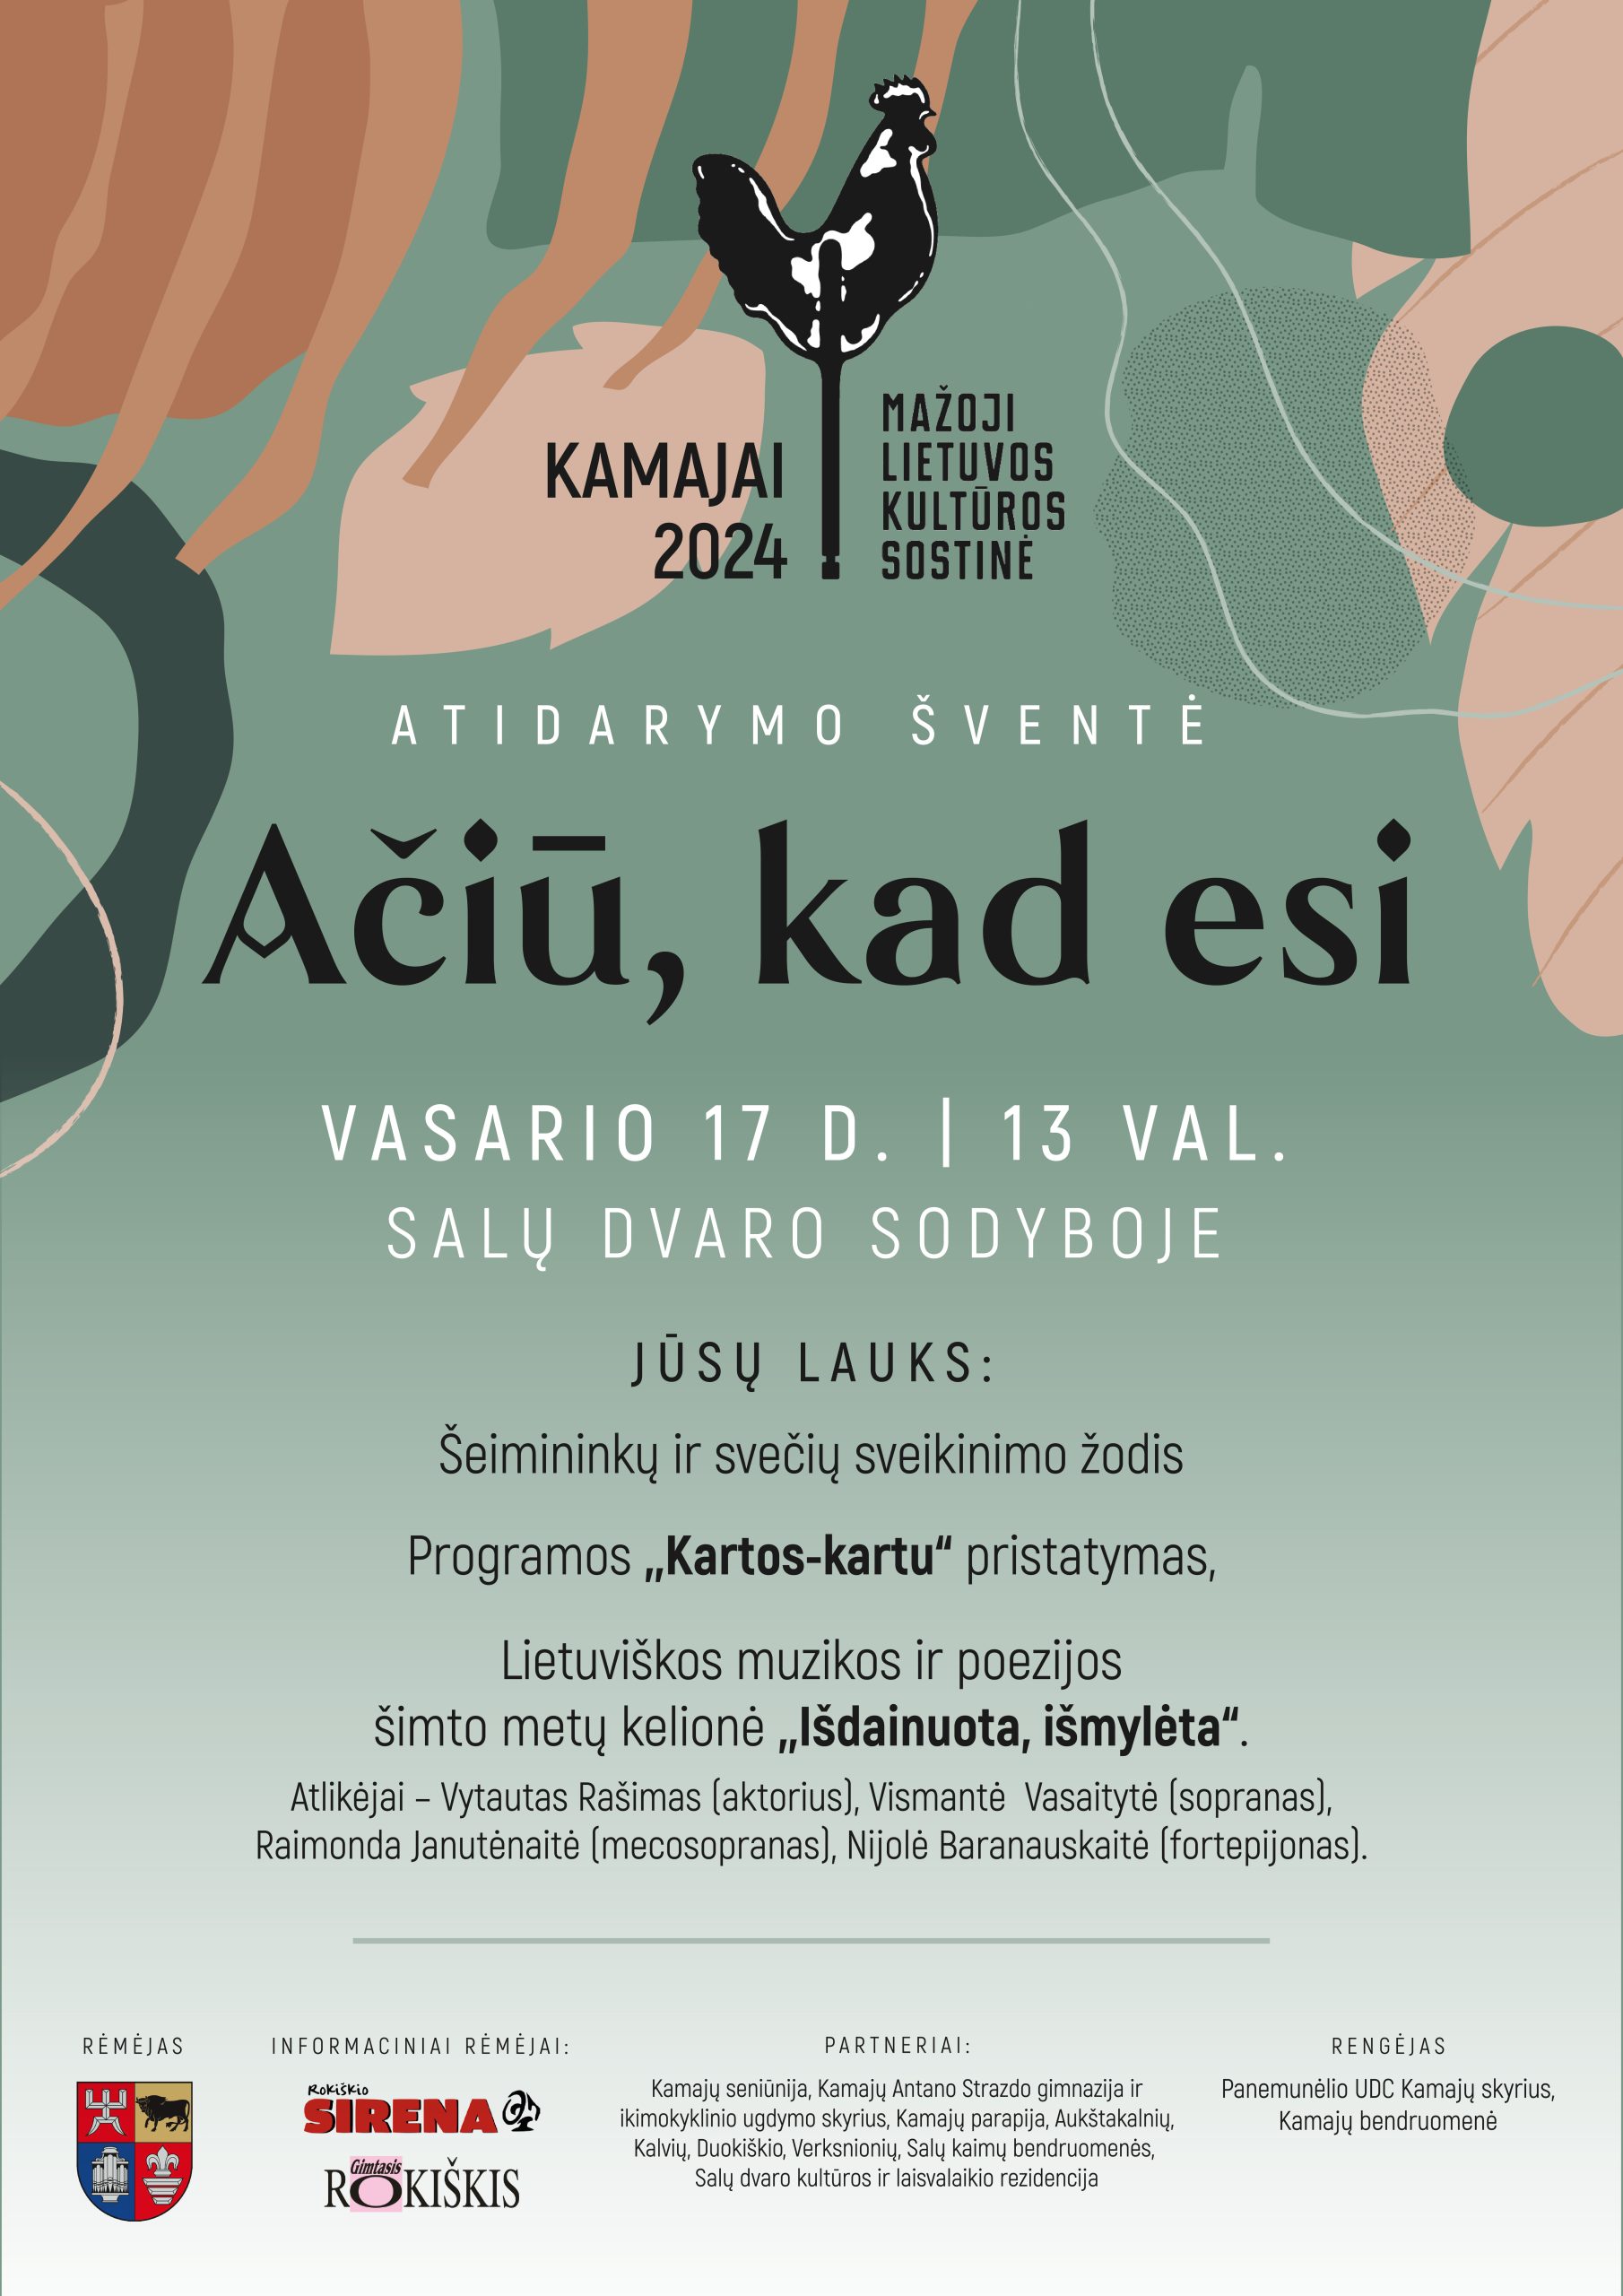 Mažoji Lietuvos kultūros sostinė Kamajai  kviečia į atidarymo šventę